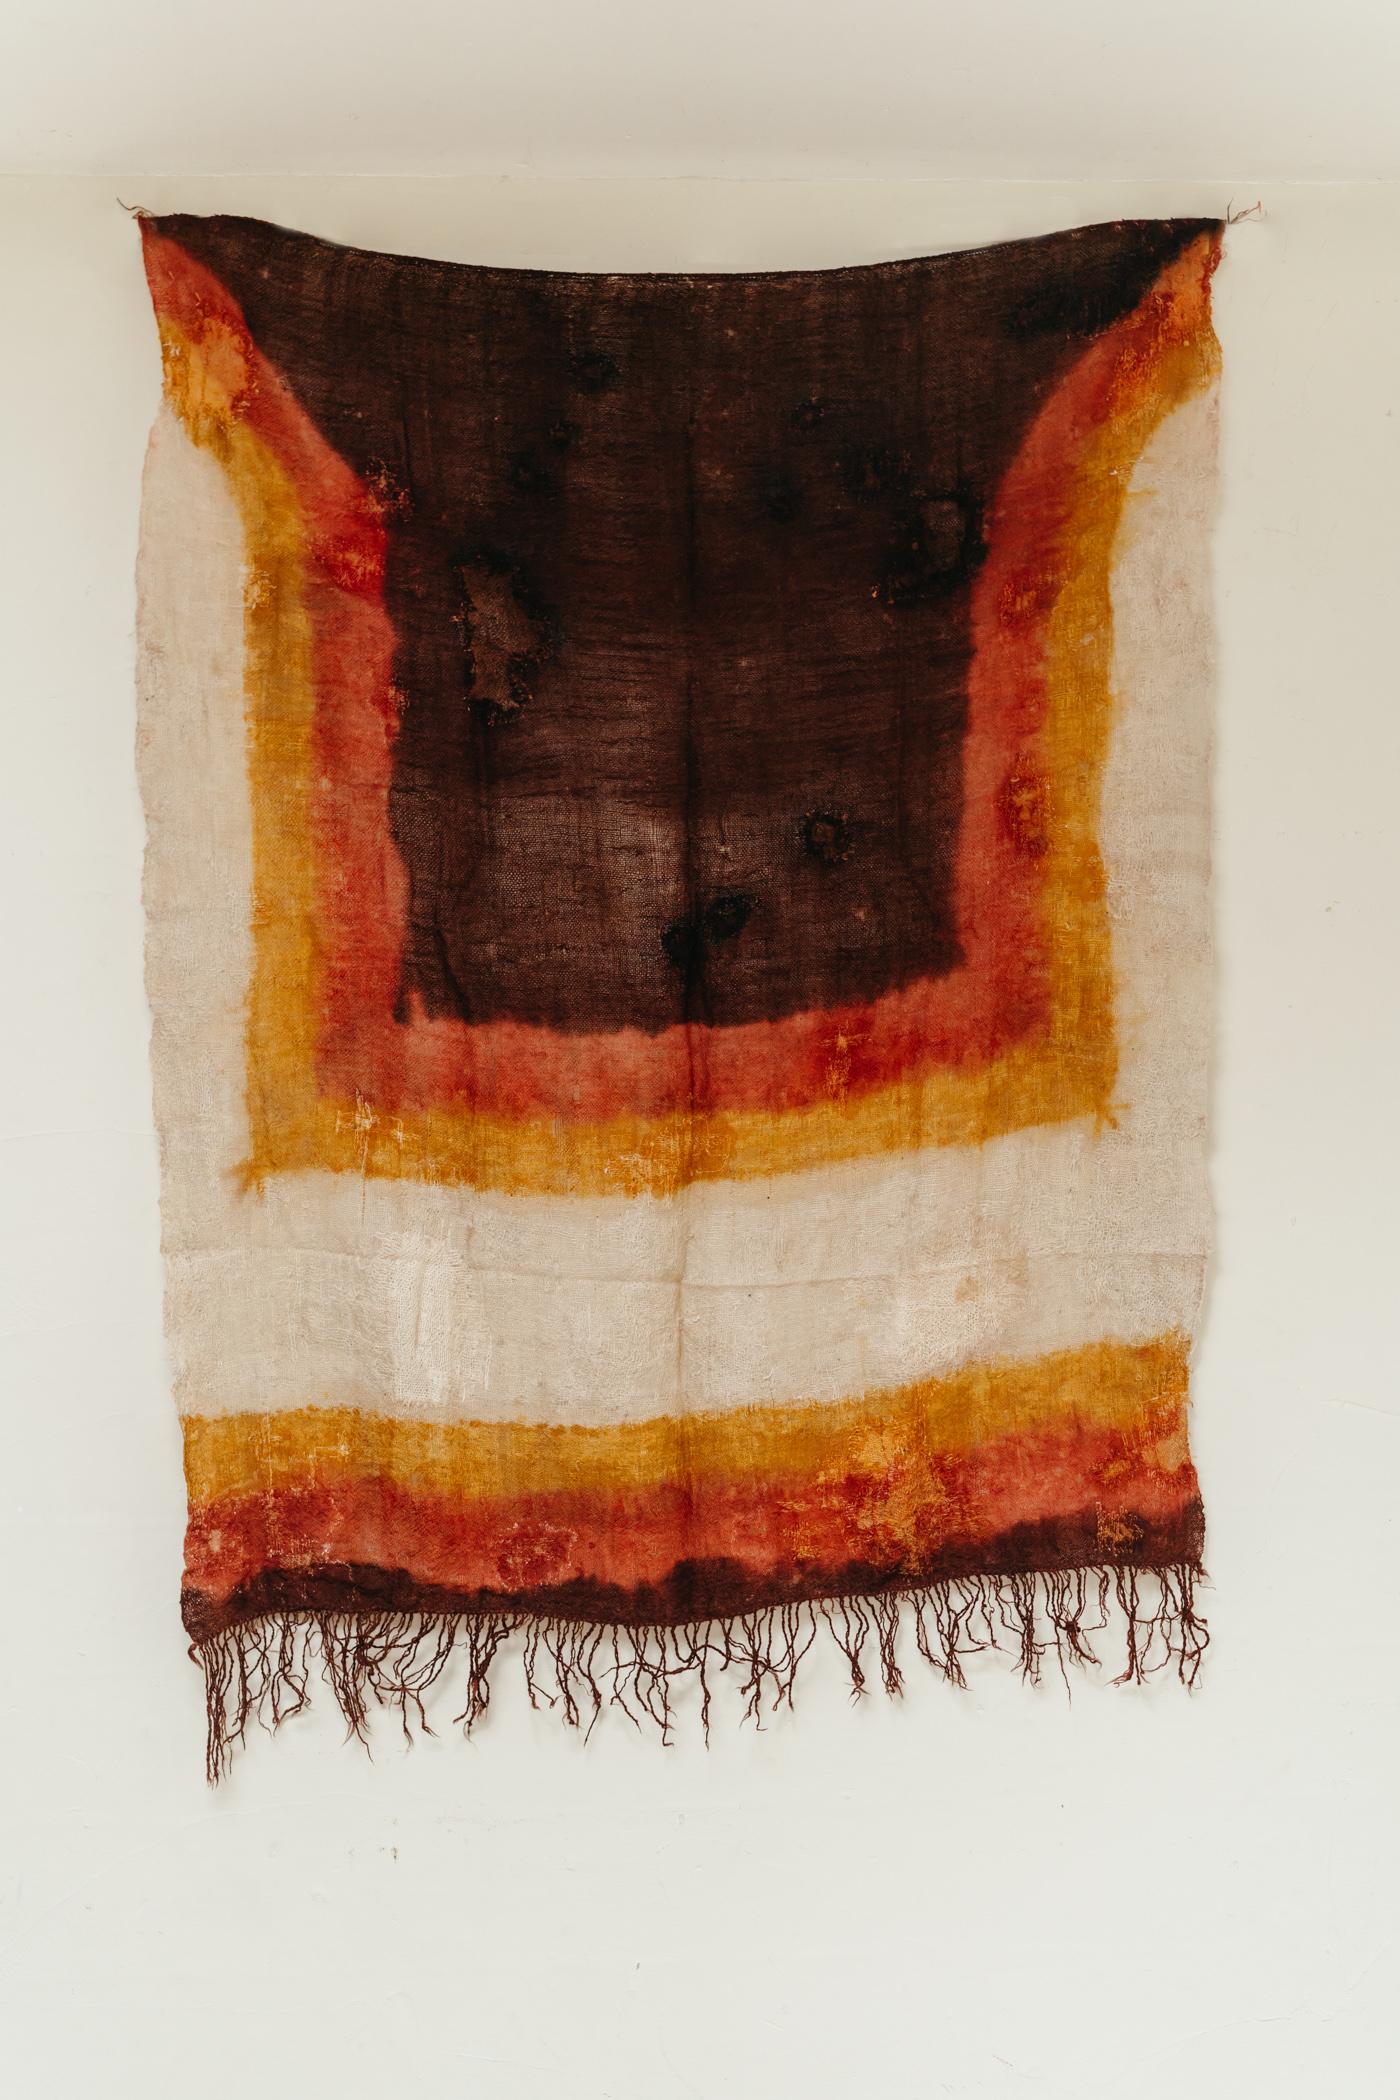 Ein sehr seltener Fund dieser Mitte des 19. Jahrhunderts einzigartige Berber Schal, sublime natürlichen Farben gefärbt.